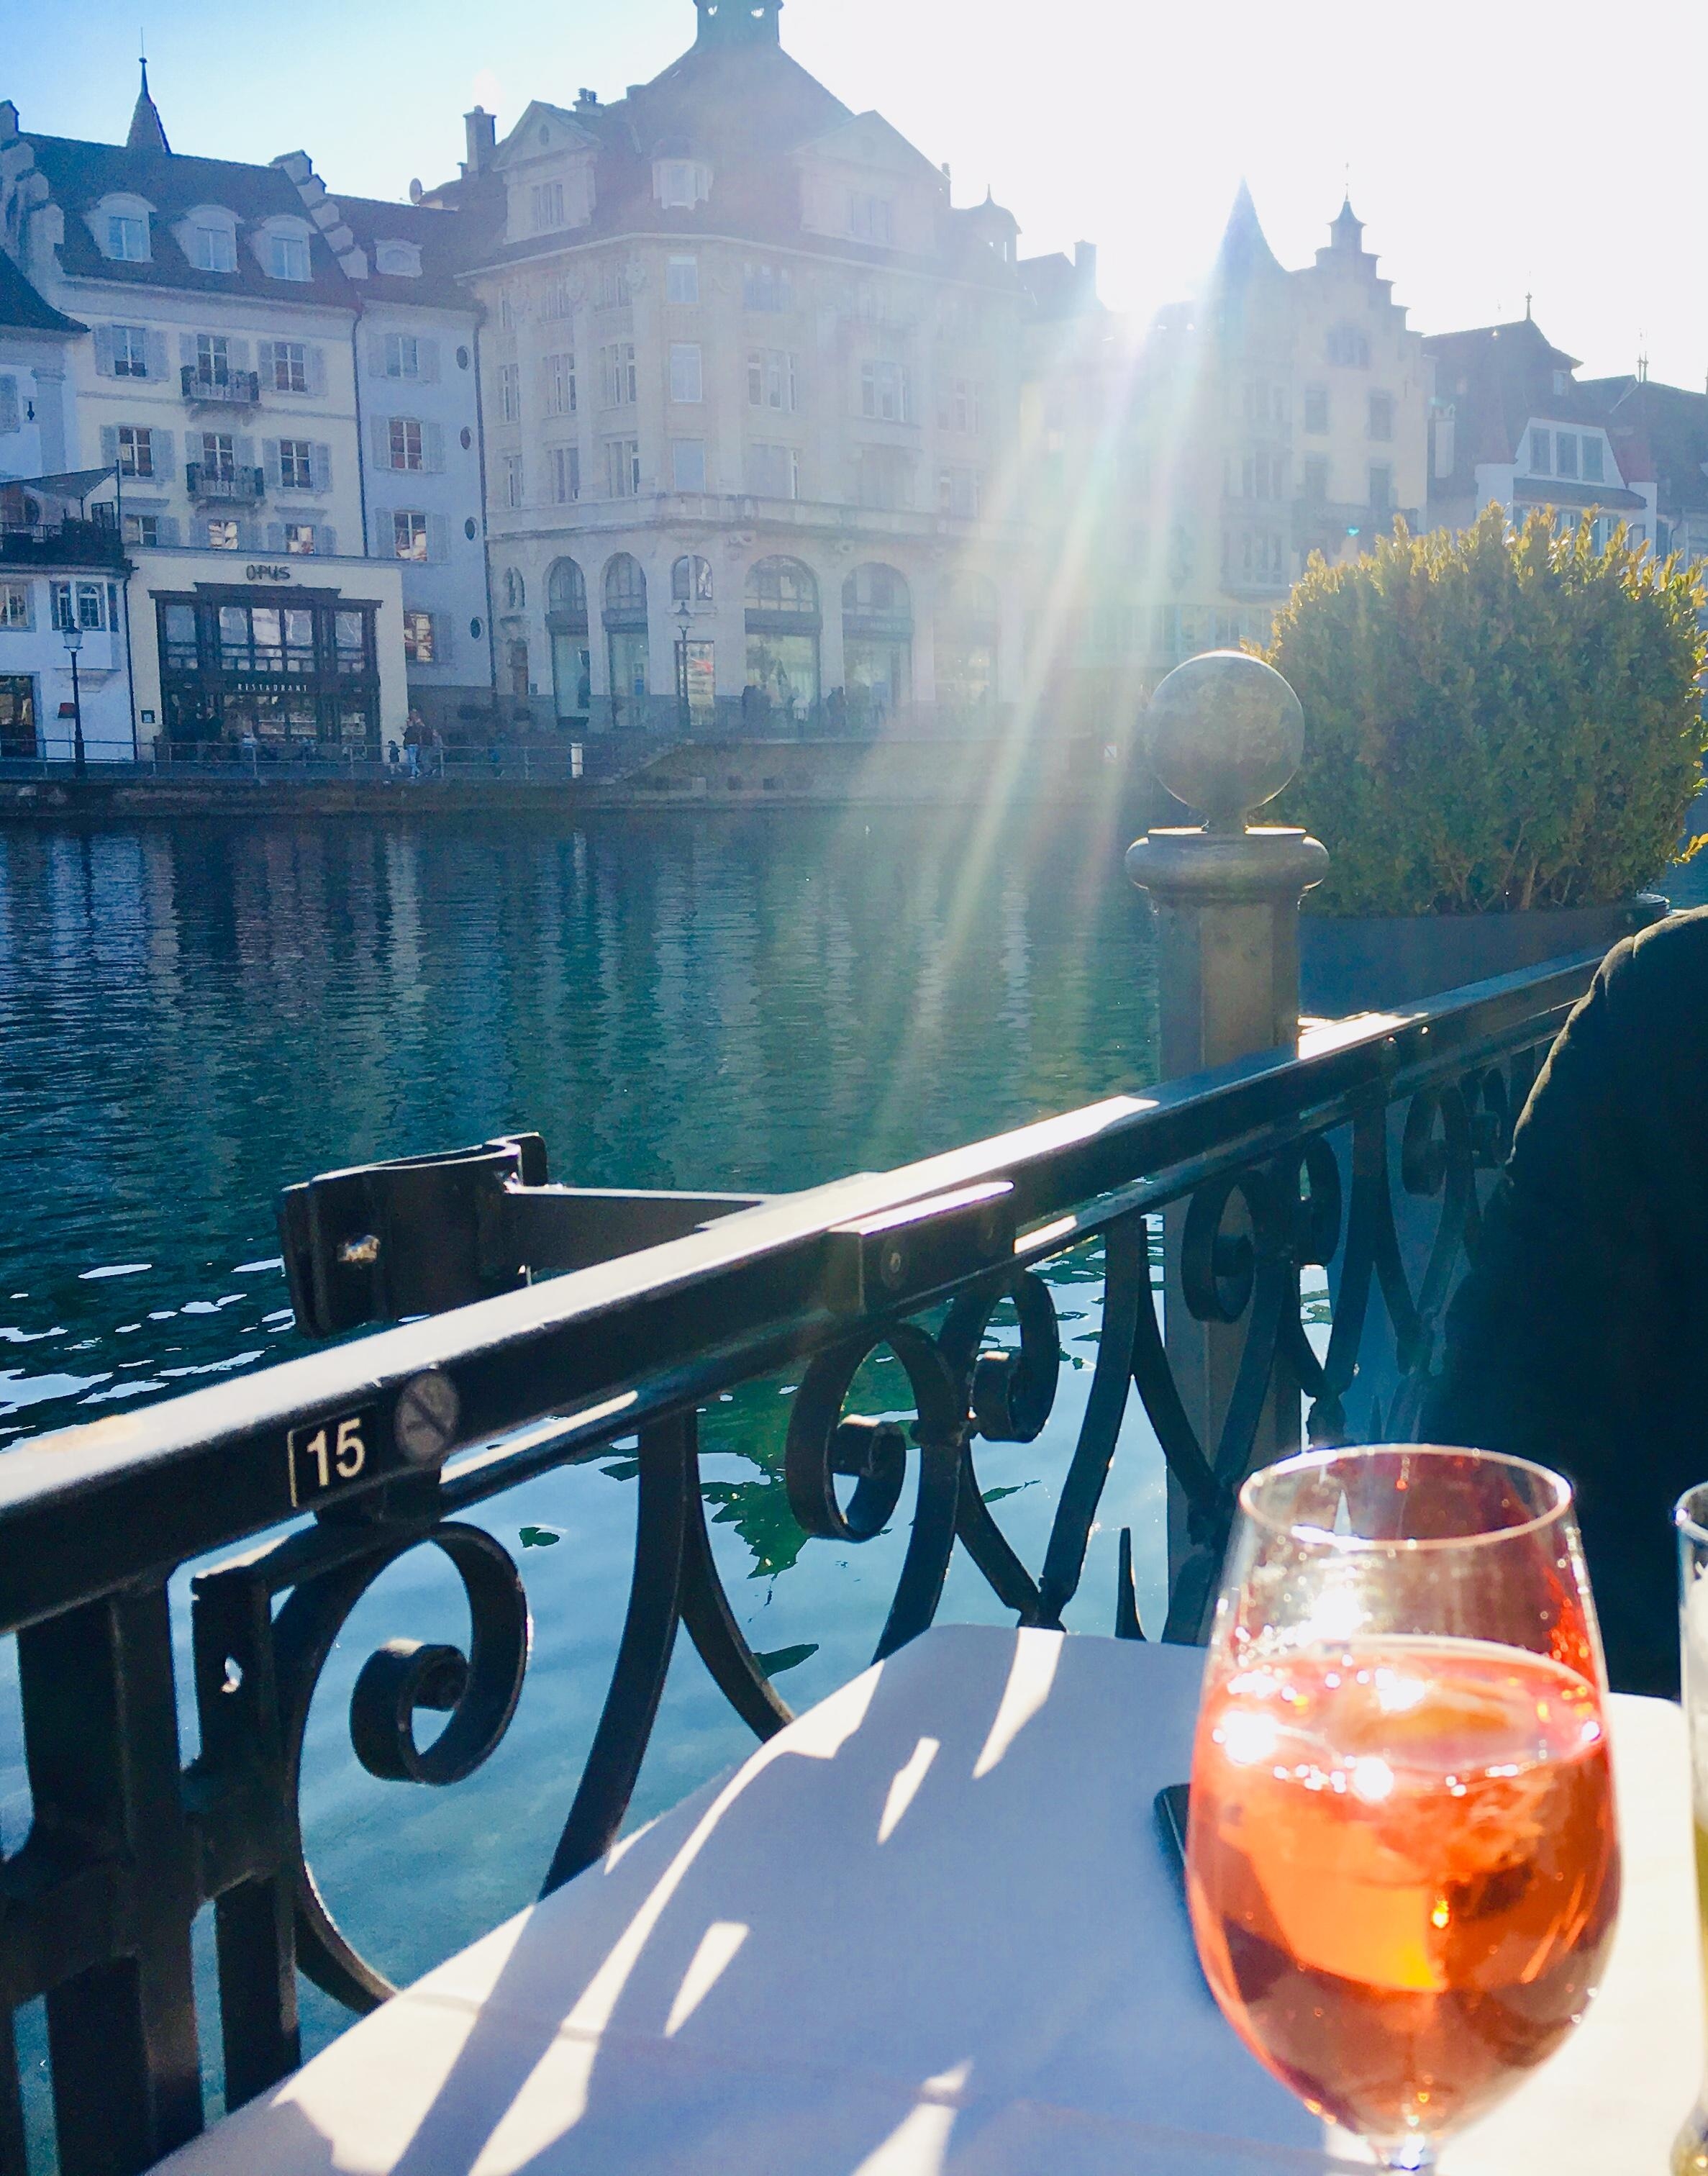 Aperitif und die ersten Sonnenstrahlen am Ufer der Reuss geniessen 🍰☕️🍸🍽🥂🥂🥂☕️
#Luzern#Restaurant#Hotel Balance#